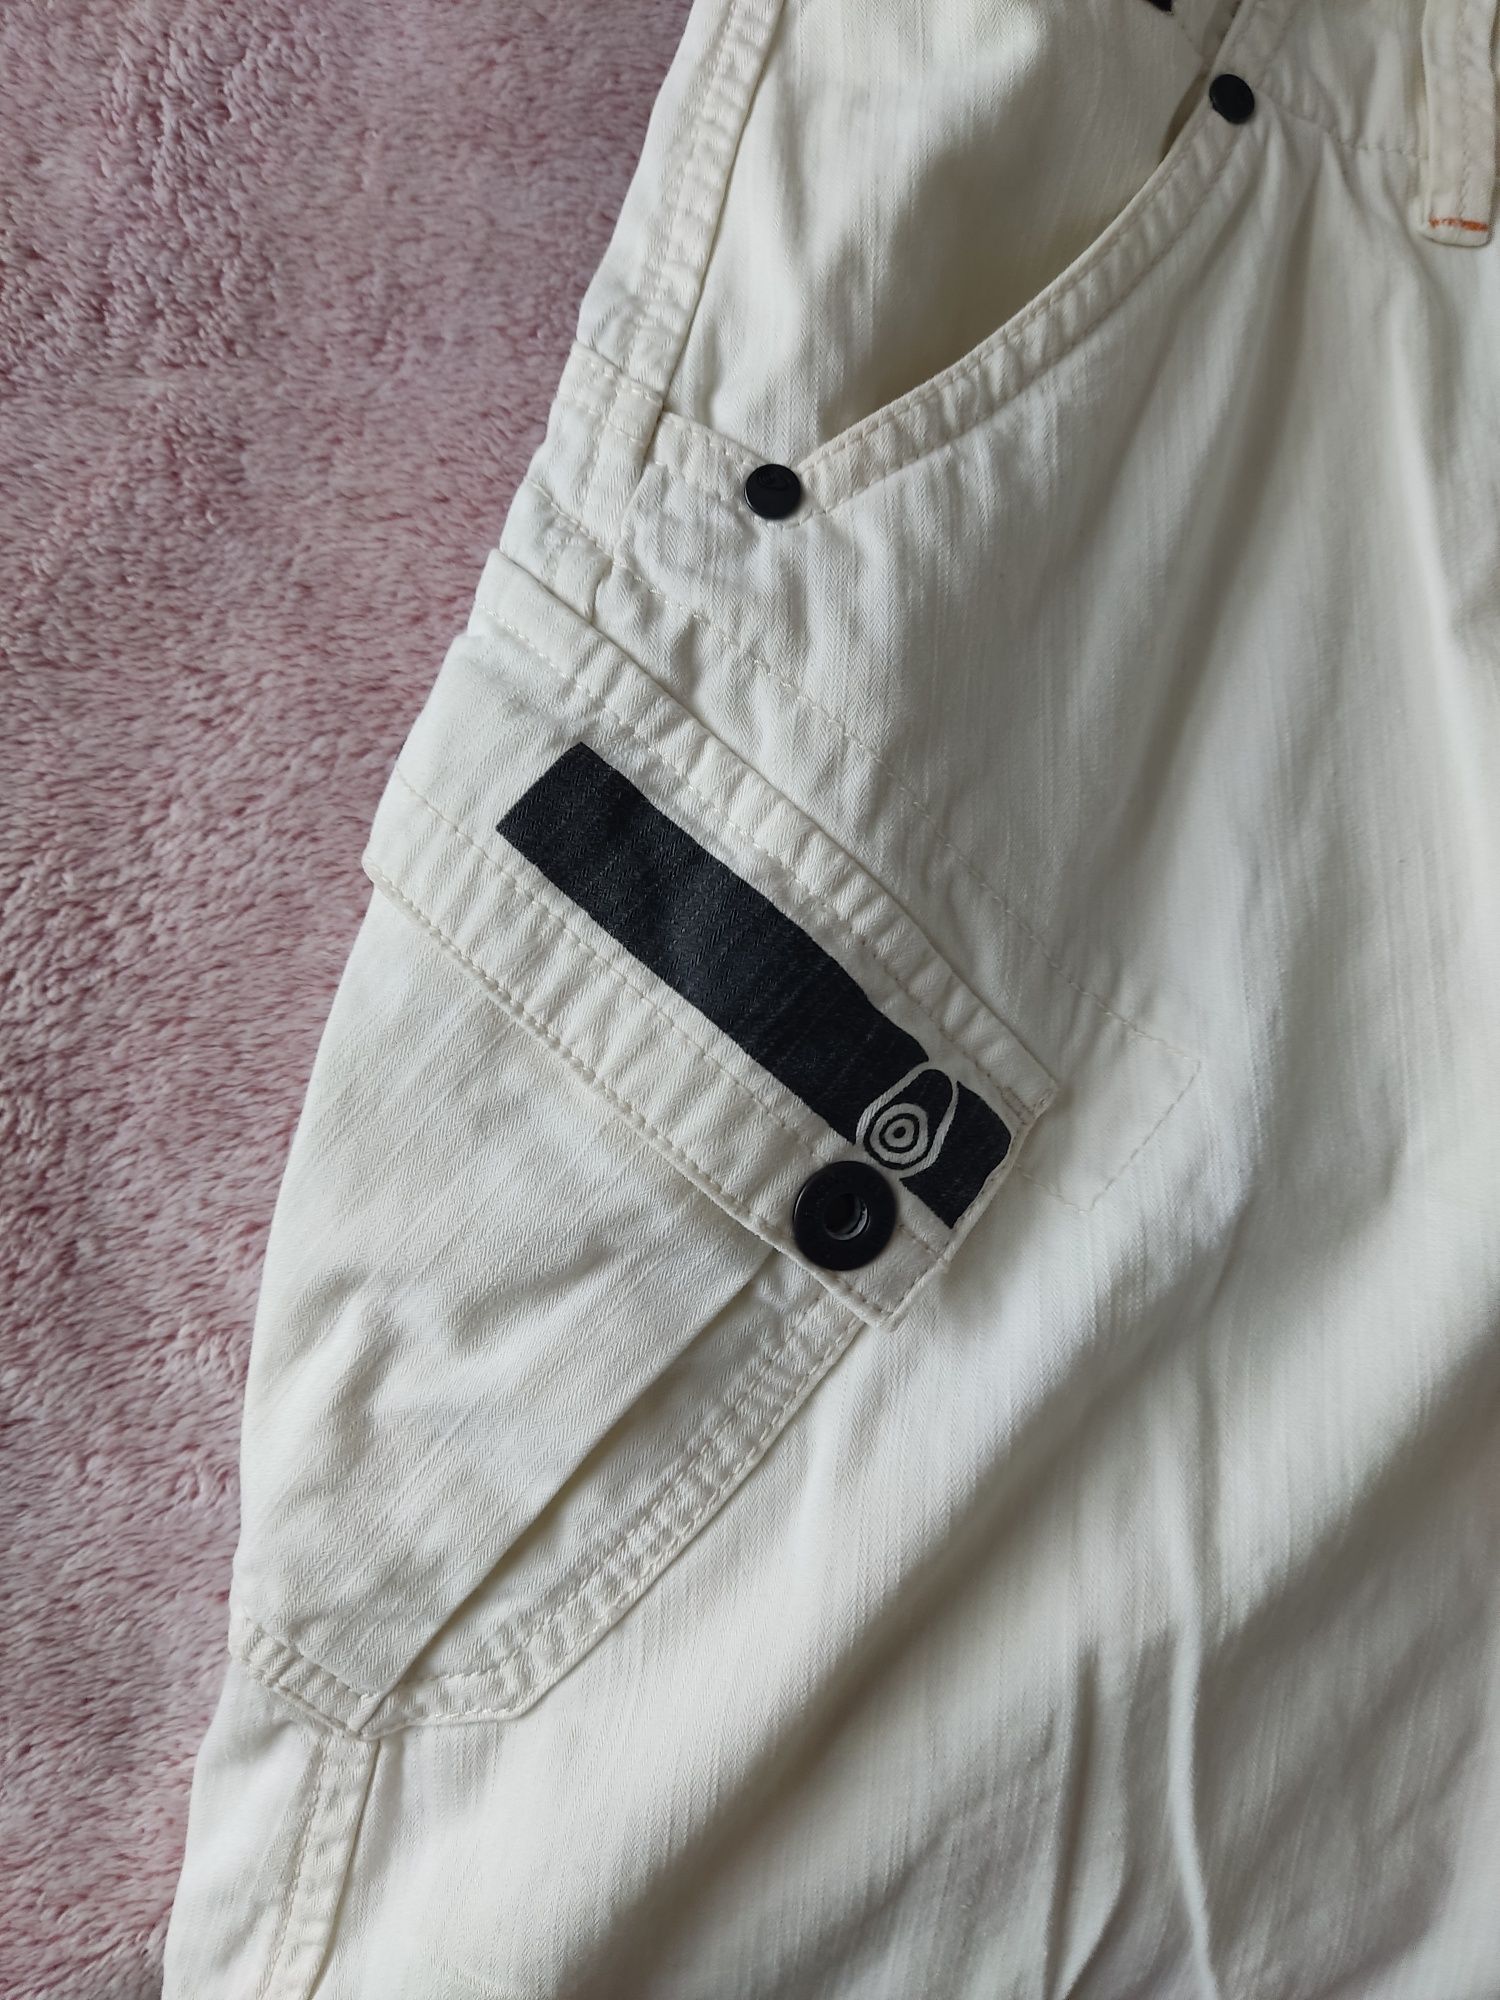 Spódnica dżinsowa biała (na zakładkę)